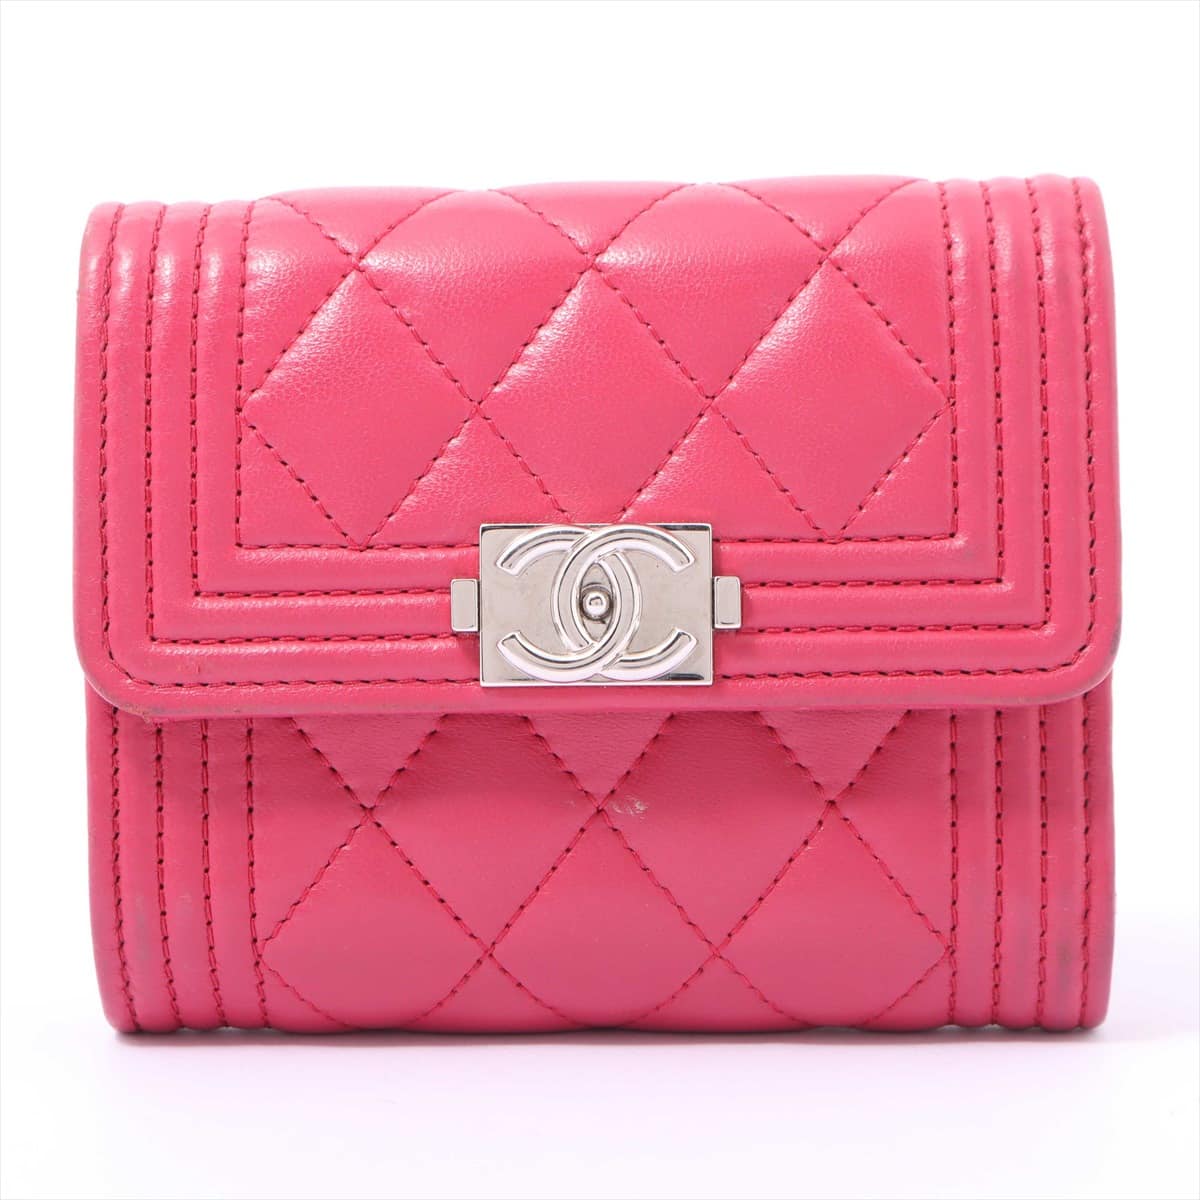 Chanel Boy Chanel Lambskin Wallet Pink Silver Metal fittings 29th